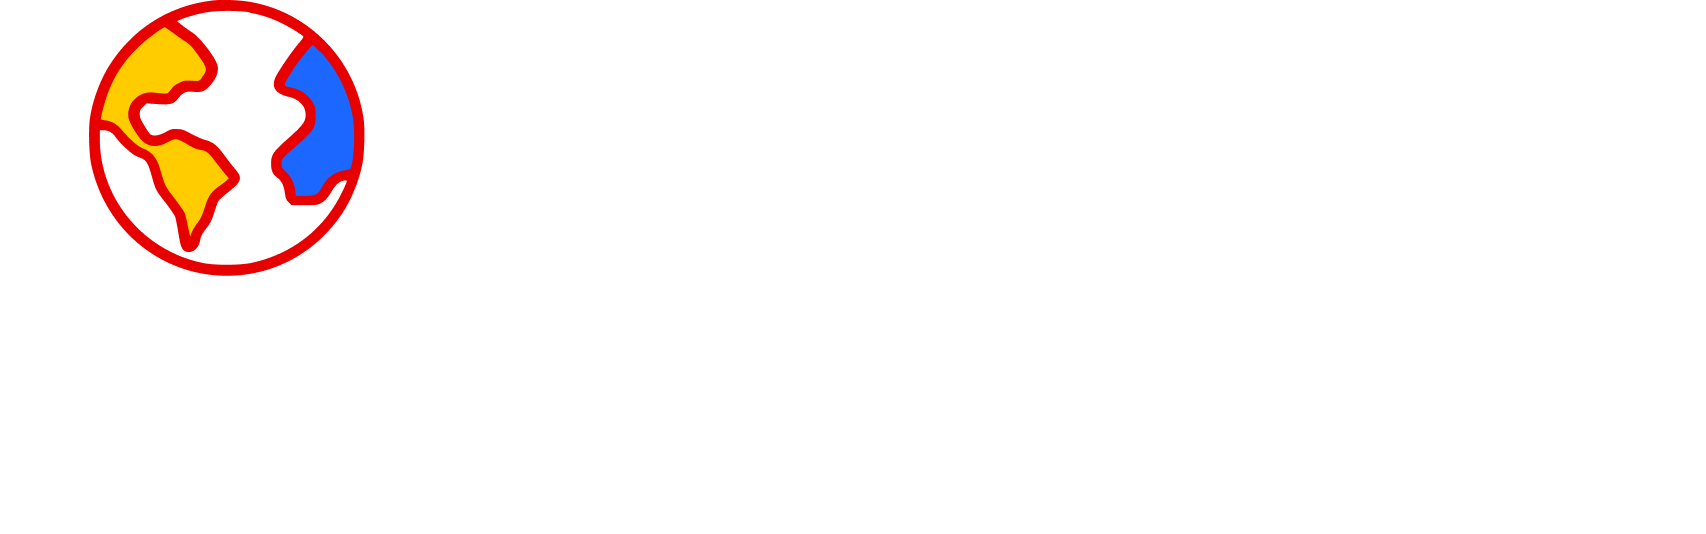 Peace Gladiators Consult